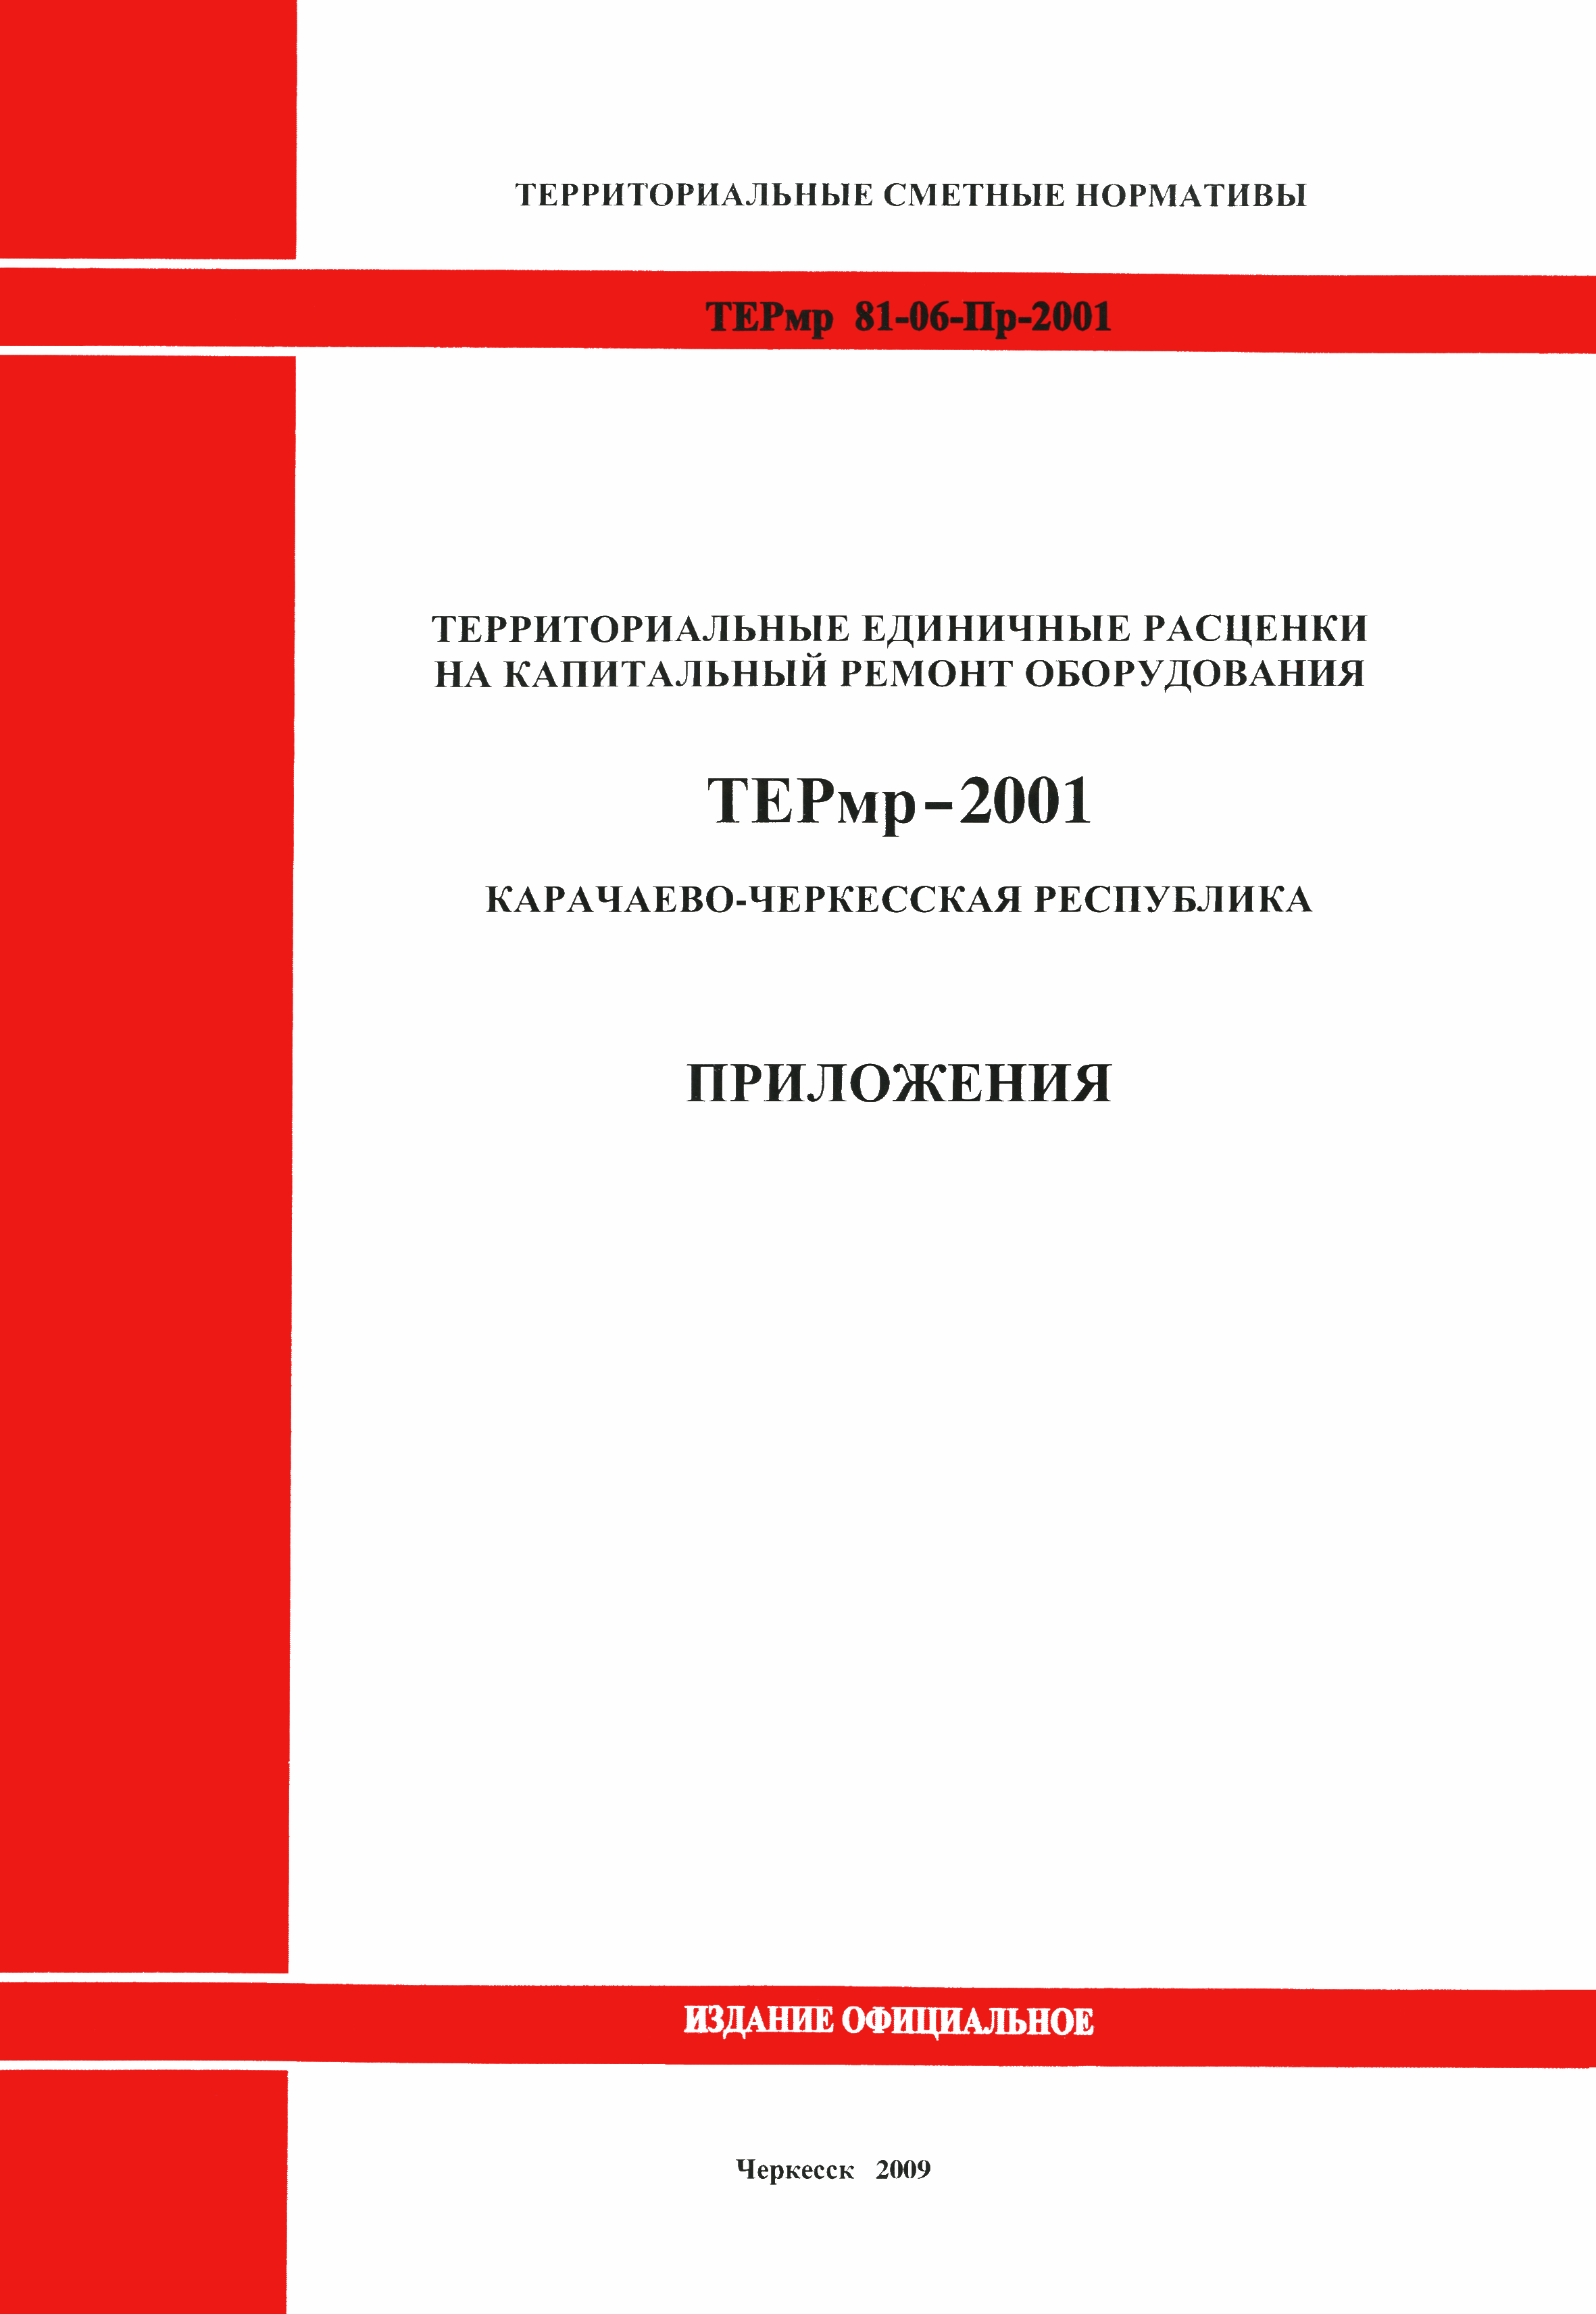 ТЕРмр Карачаево-Черкесская Республика 2001-Пр